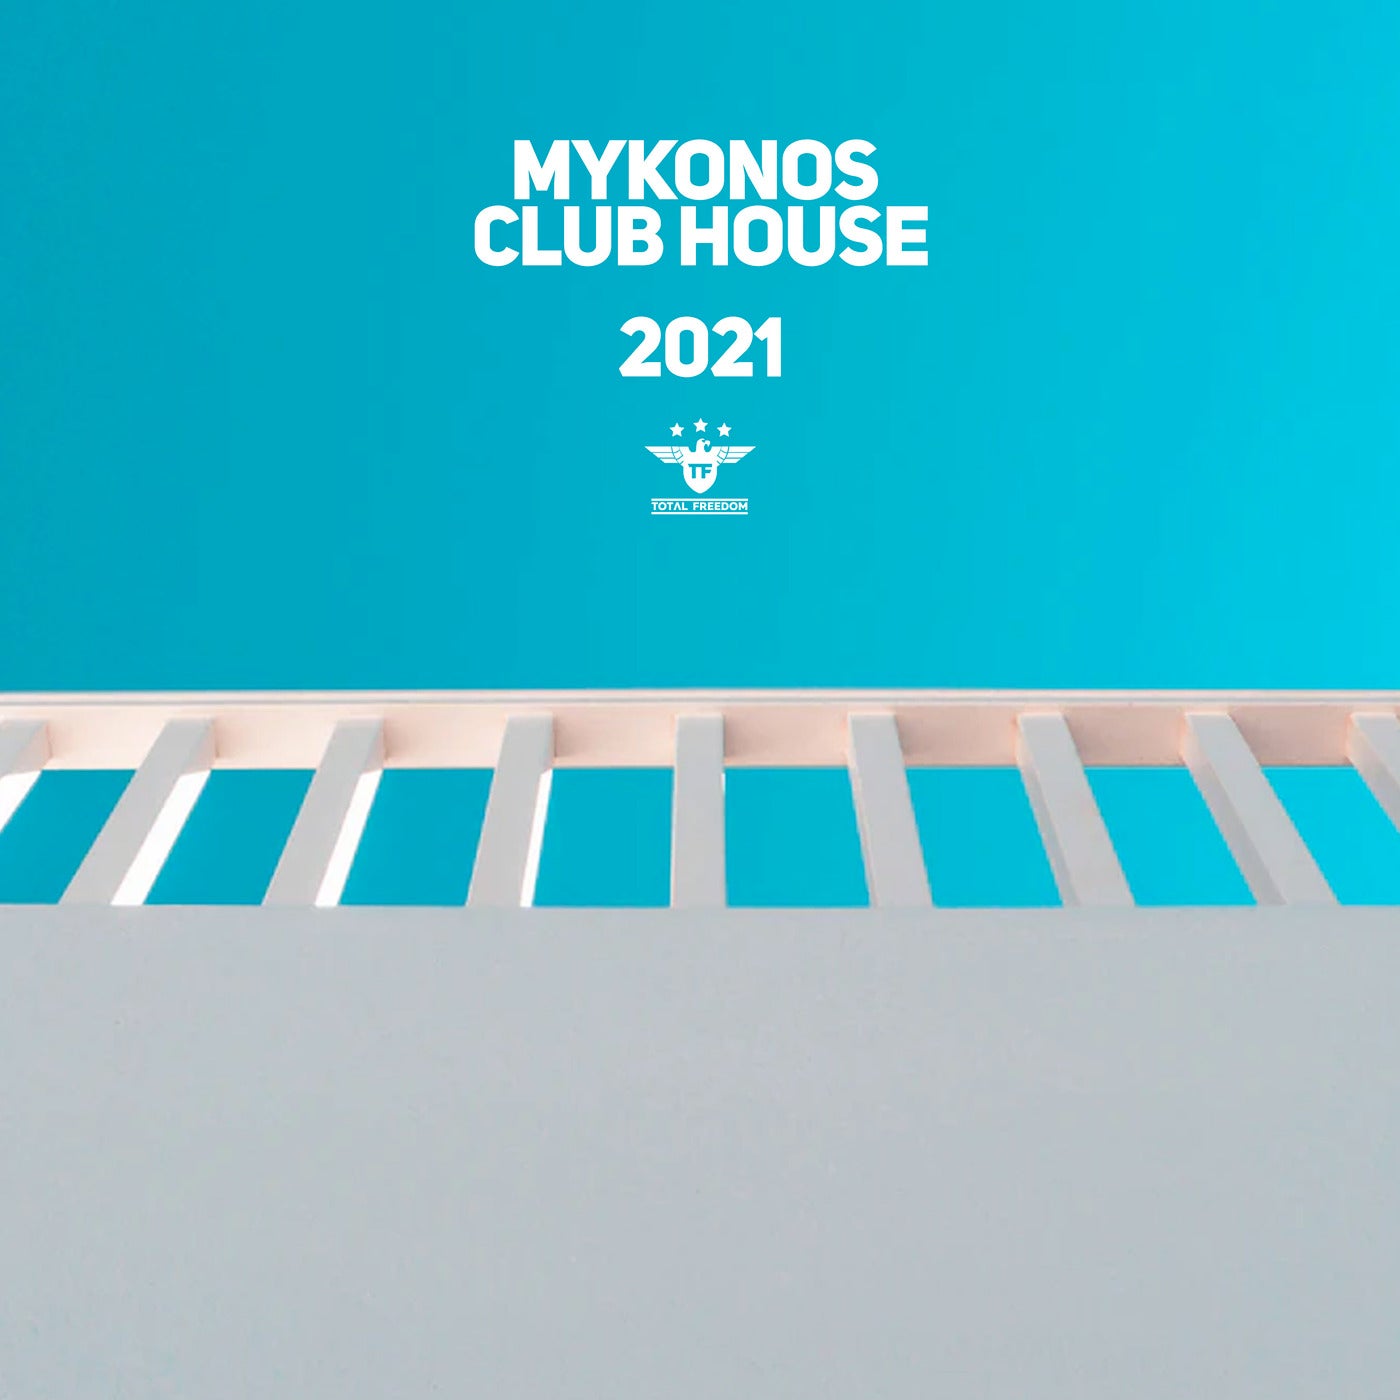 Mykonos Club House 2021